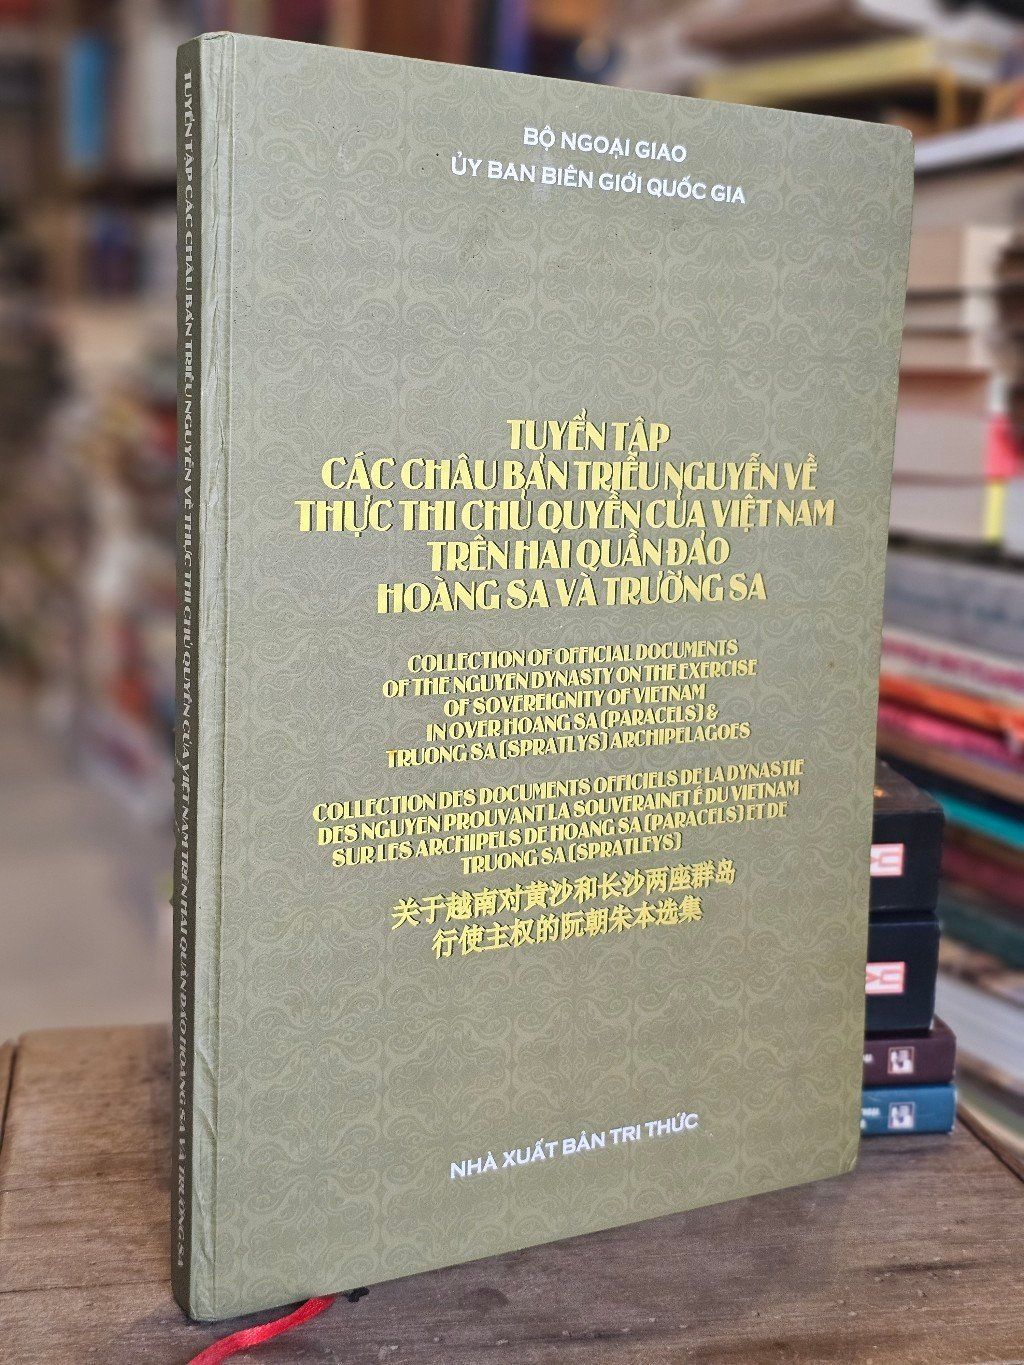  Tuyển tập các châu bản triều Nguyễn về thực thi chủ quyền của Việt Nam trên hai quần đảo Hoàng Sa và Trường Sa 